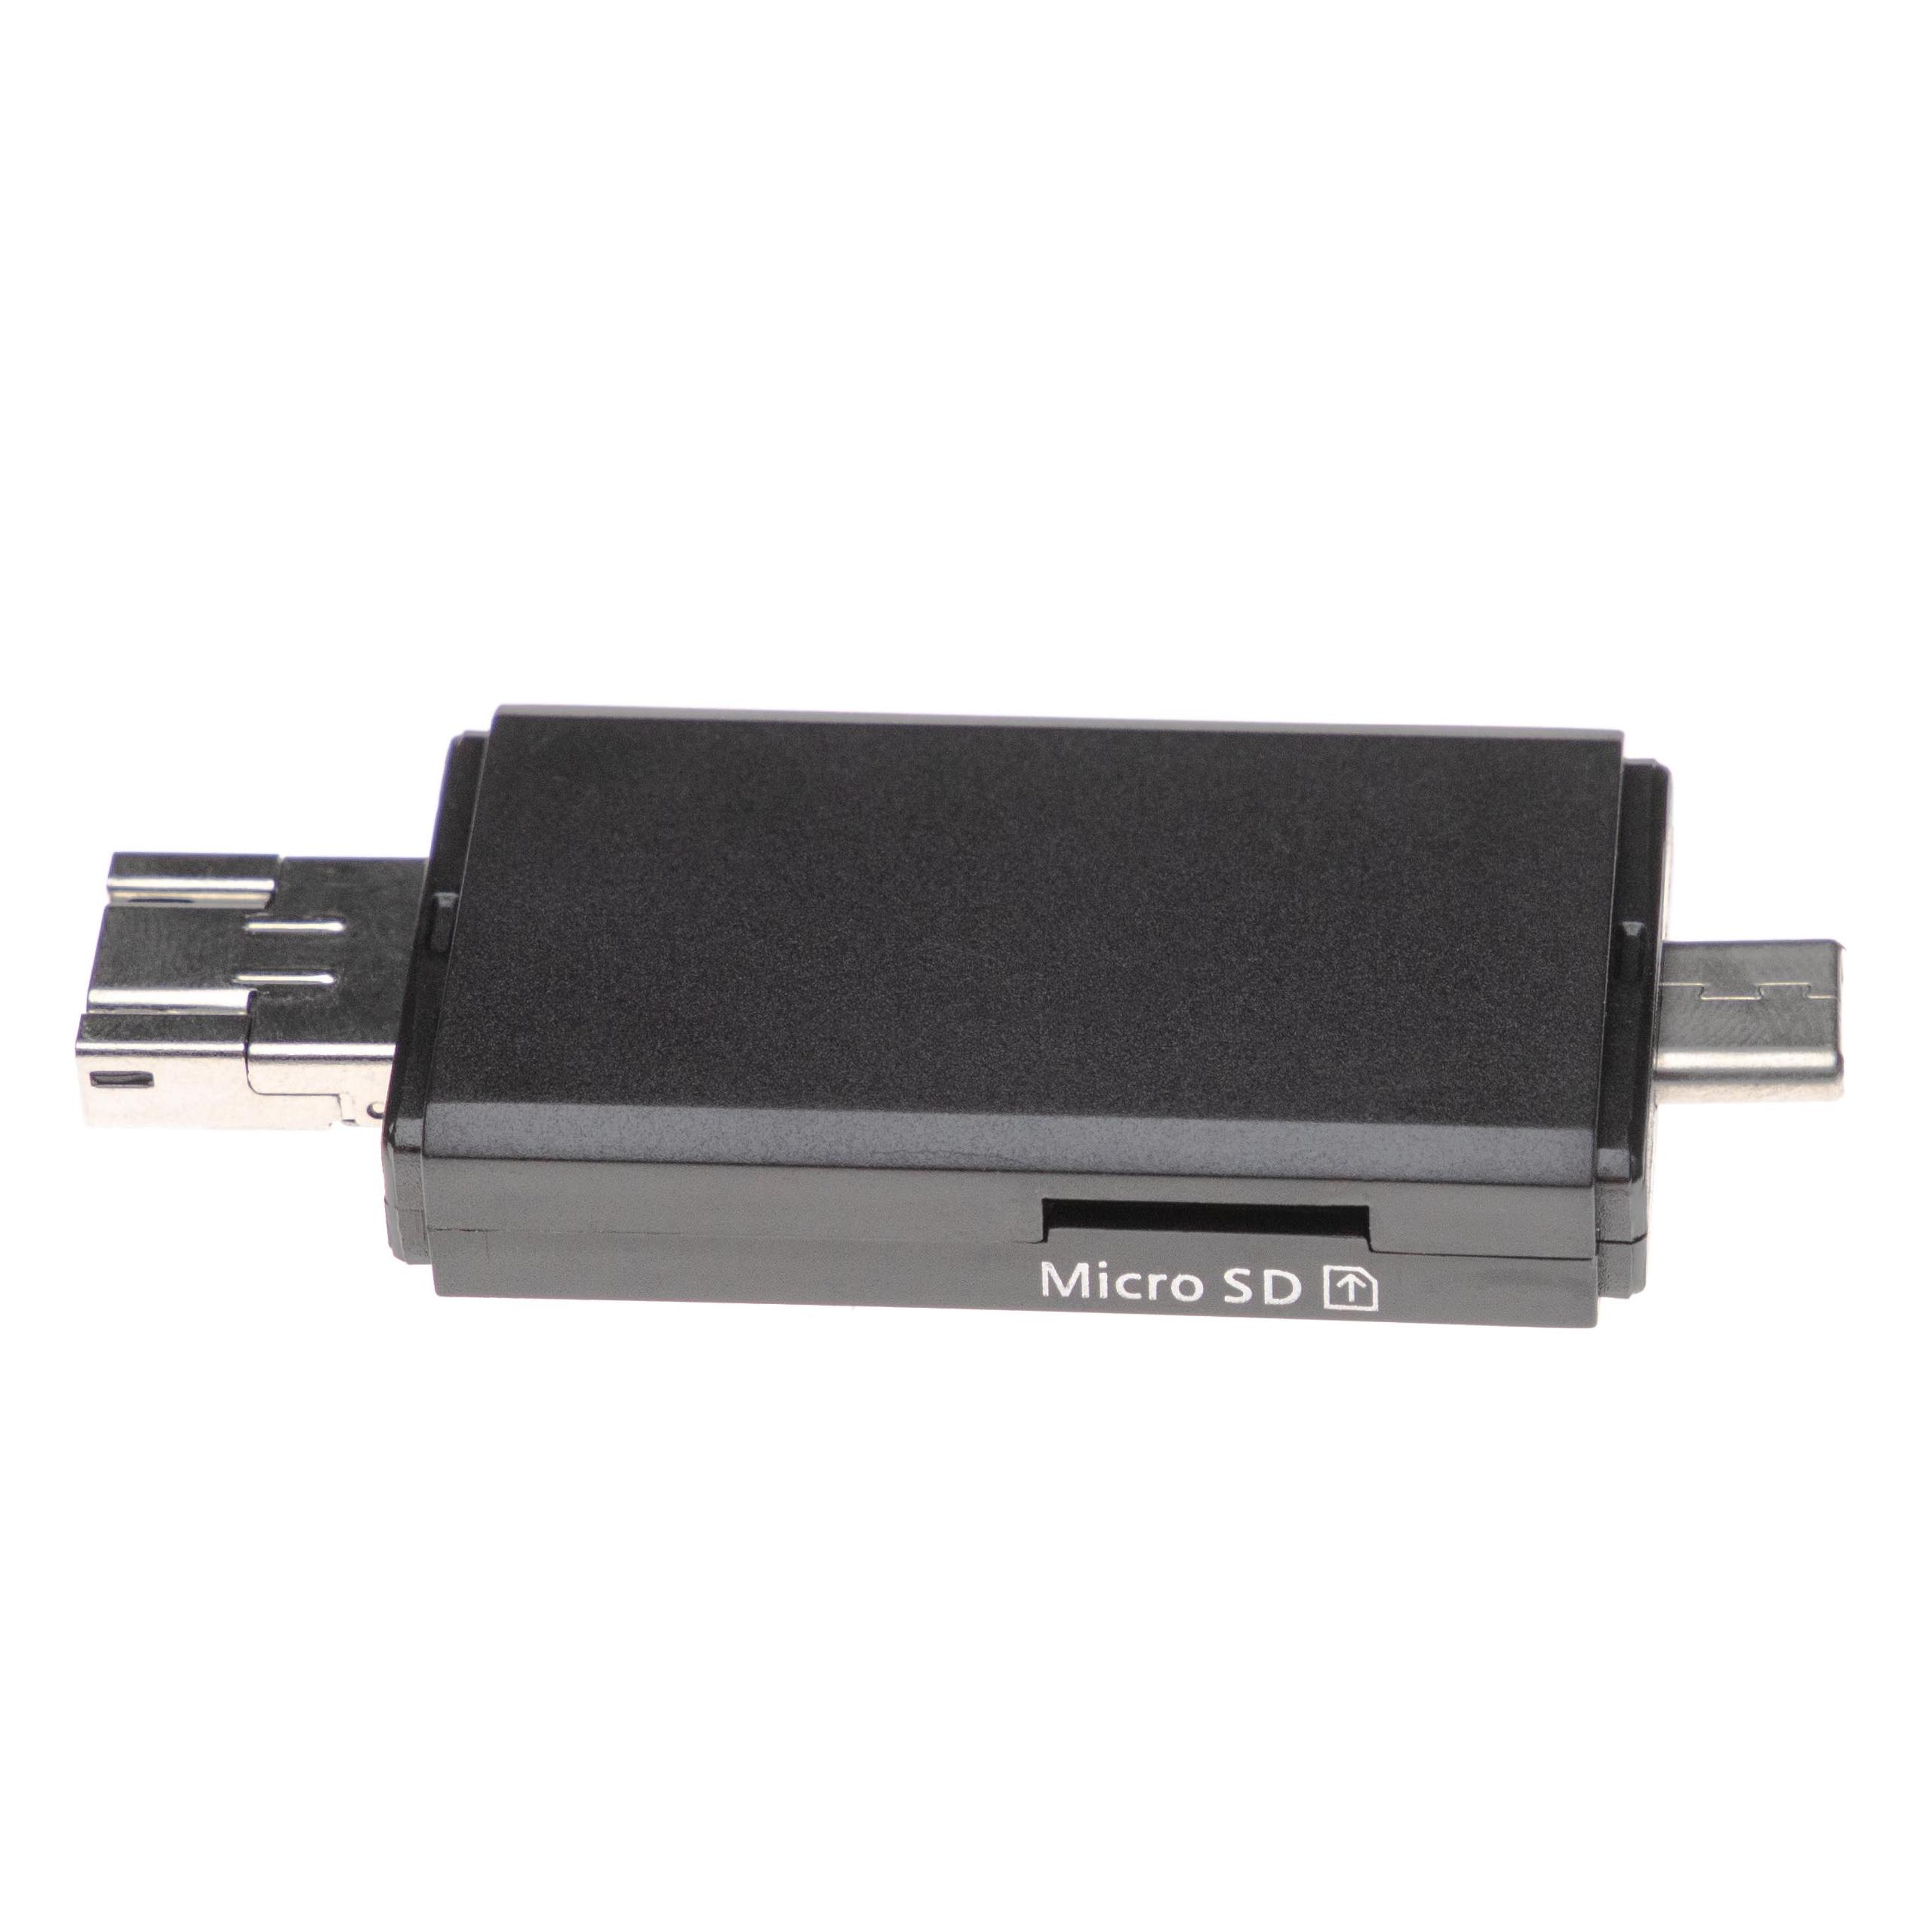 SD Kartenleser passend für Micro-SD, Mini-SD Speicherkarten - Mit Schutzkappe